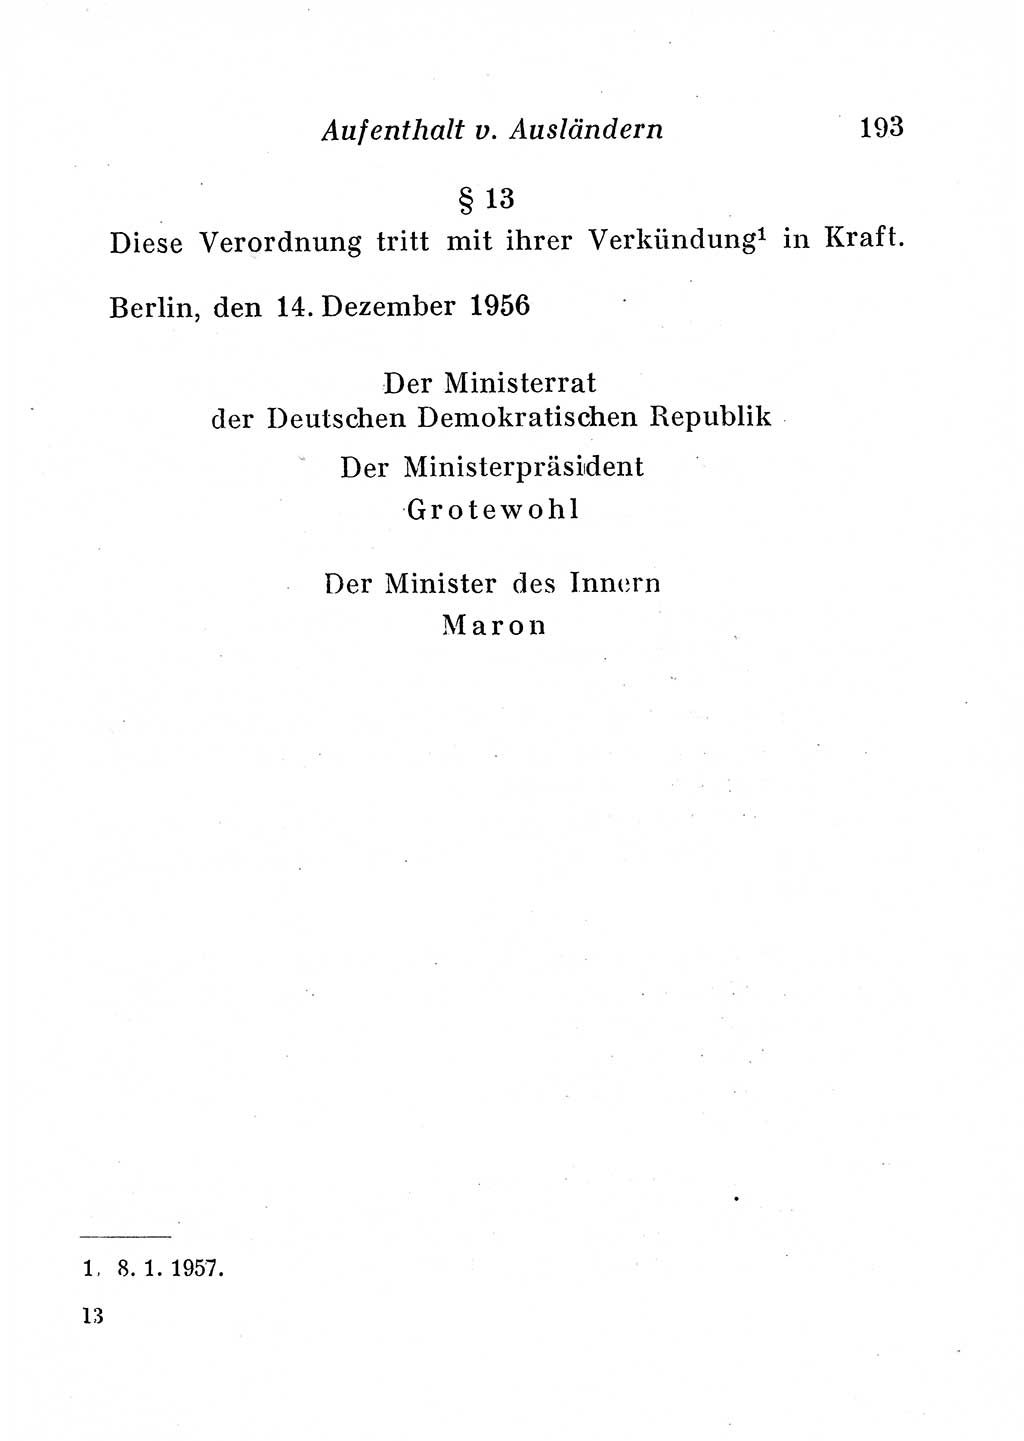 Staats- und verwaltungsrechtliche Gesetze der Deutschen Demokratischen Republik (DDR) 1958, Seite 193 (StVerwR Ges. DDR 1958, S. 193)